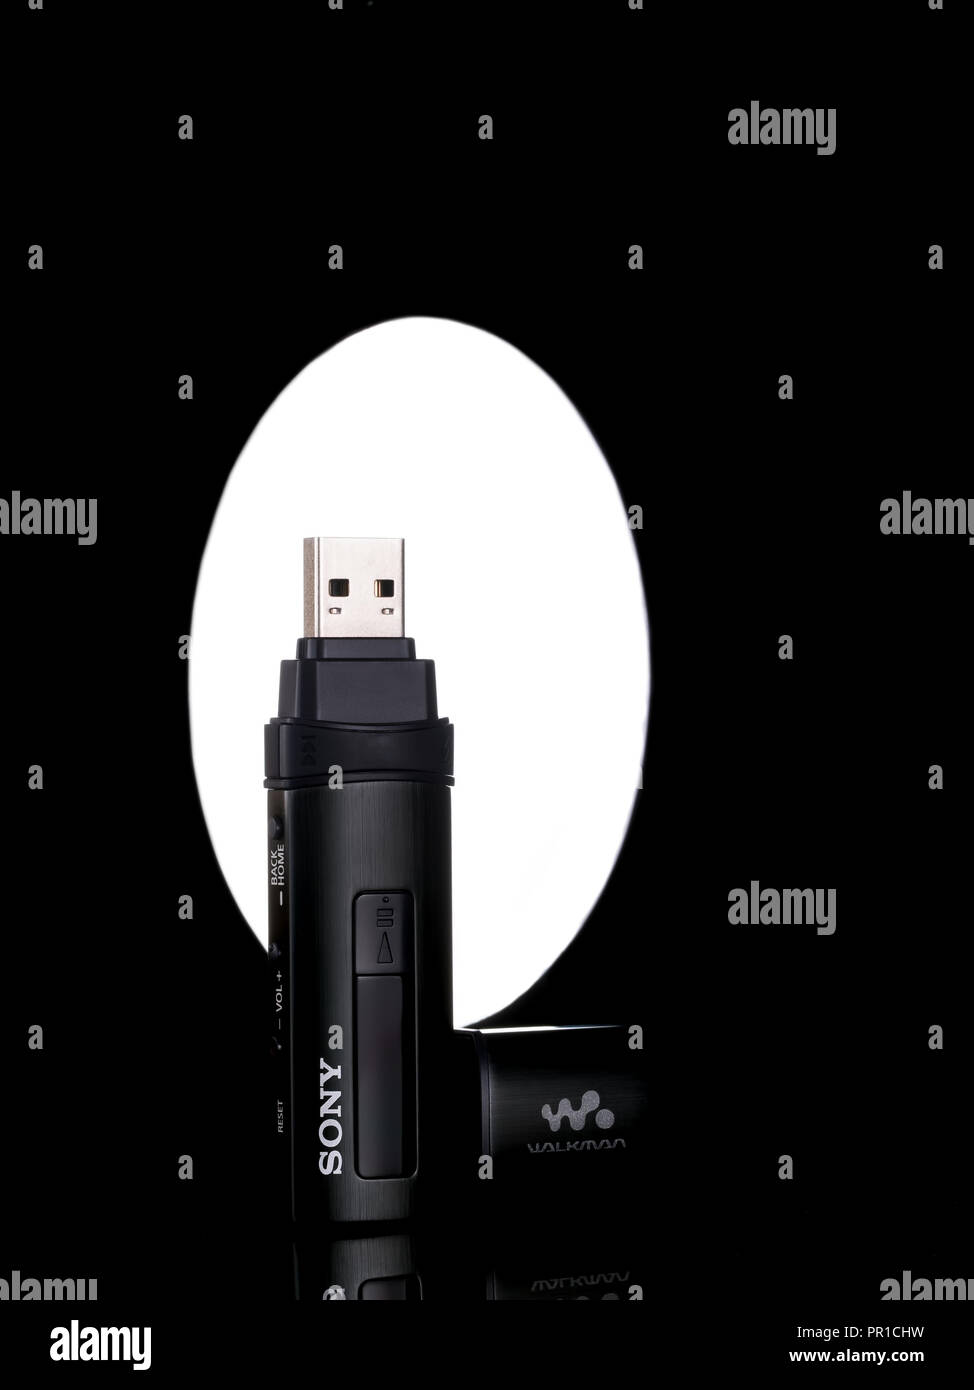 Sony Walkman MP3 player. Digital music player with FM radio Stock Photo -  Alamy